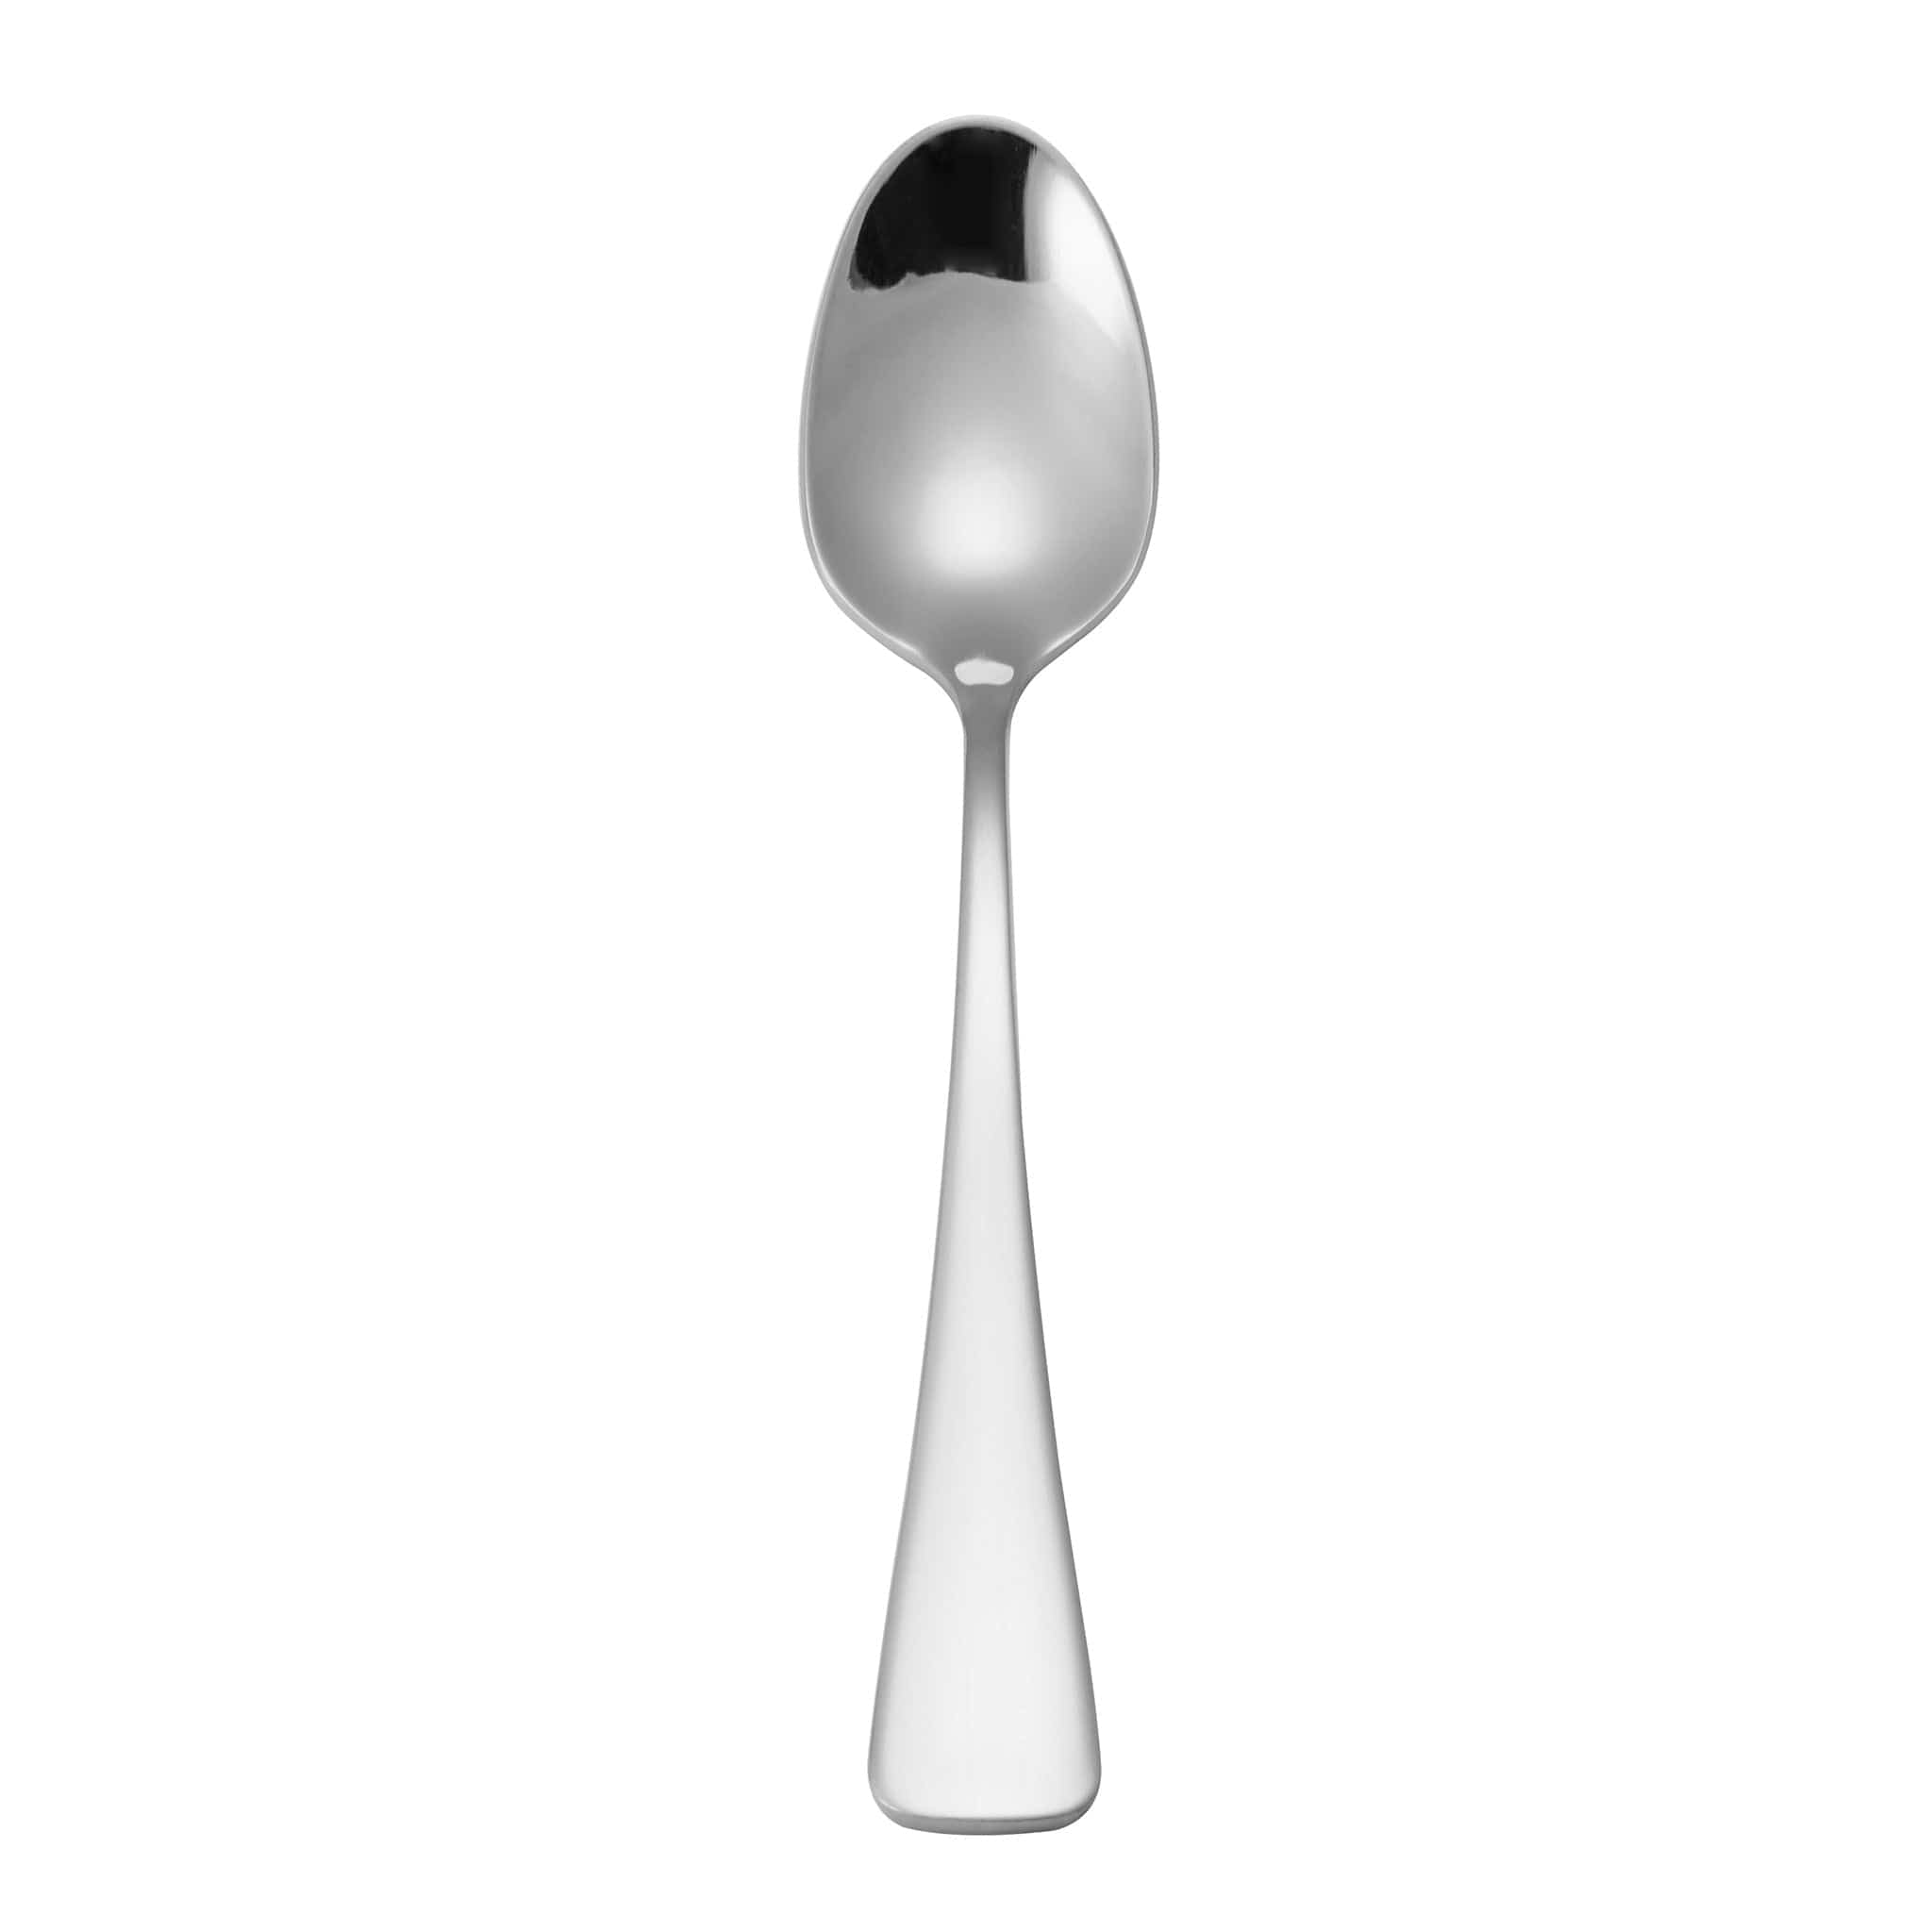 Blair 18/10 Coffee Spoon 7.3" Stainless Steel